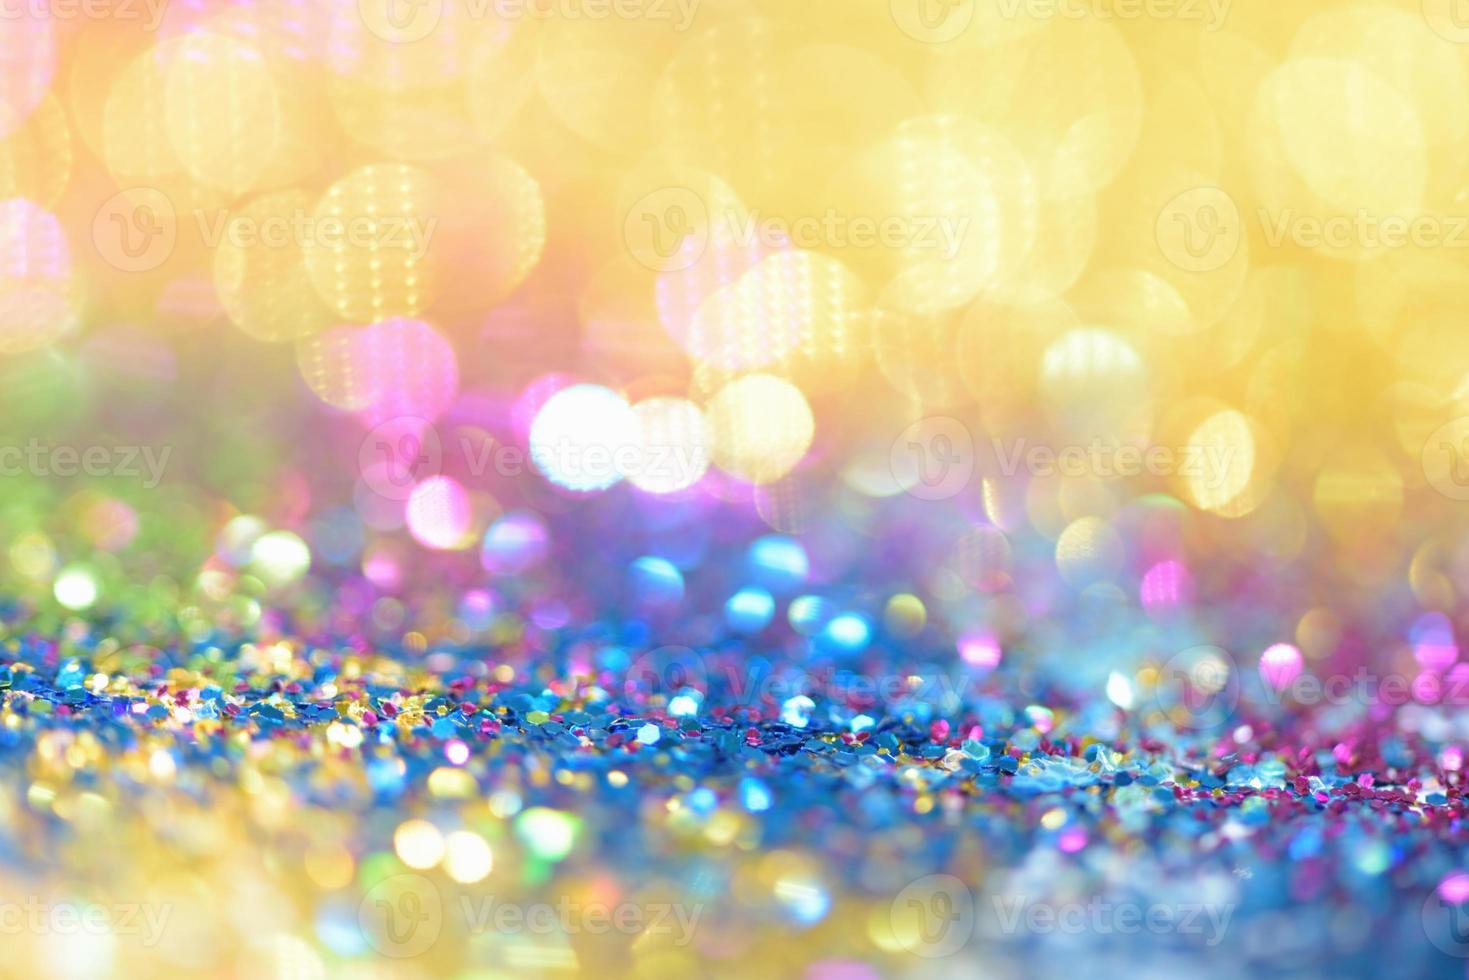 bokeh glitter colorfull sfocato sfondo astratto per compleanno, anniversario, matrimonio, capodanno o natale foto